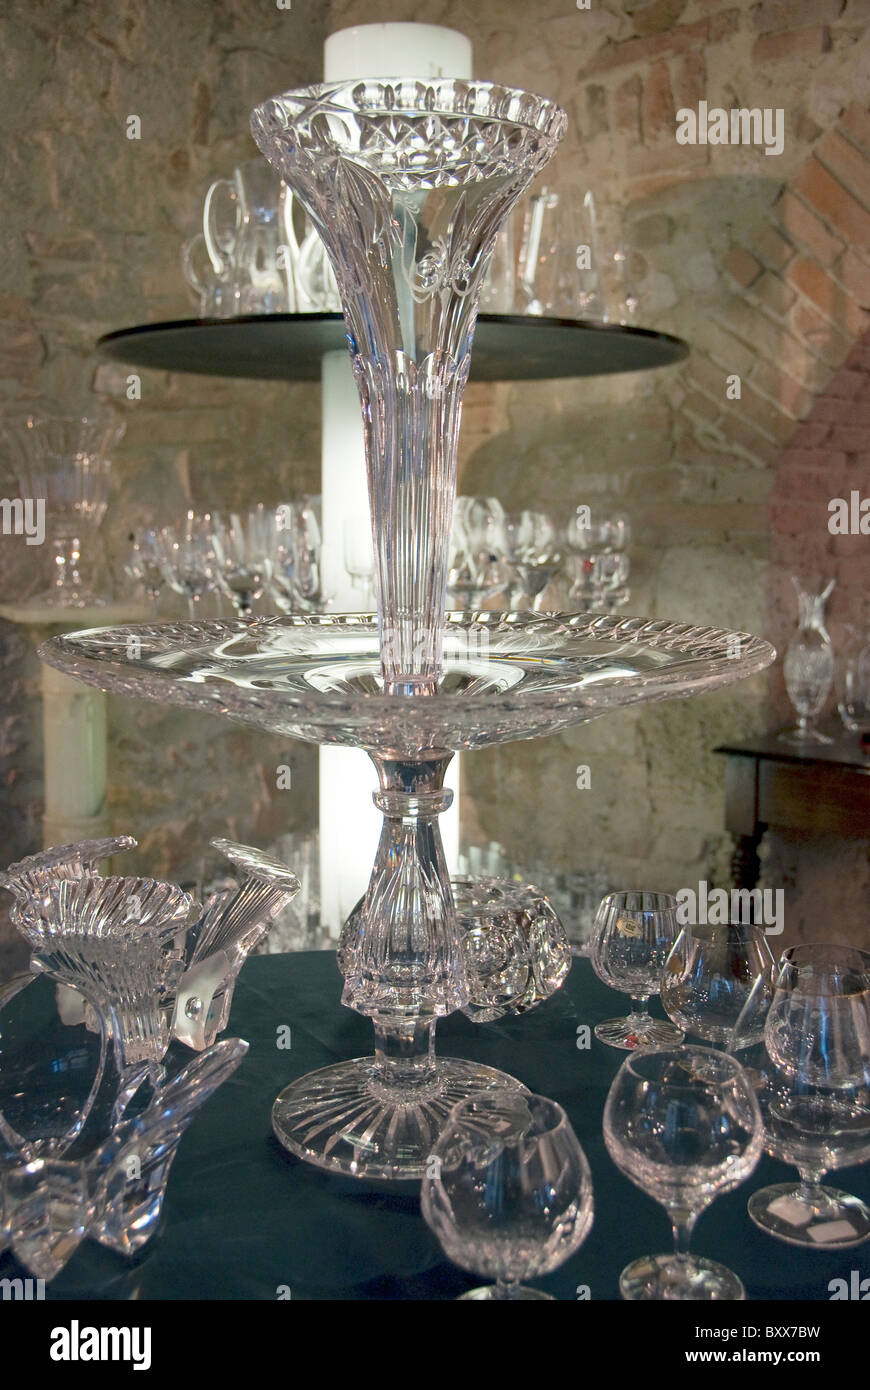 Cristallo per vendita a Colle Val d'elsa, Toscana, Italia, una cittadina  nei pressi di Siena noto per la sua produzione di cristallo Foto stock -  Alamy